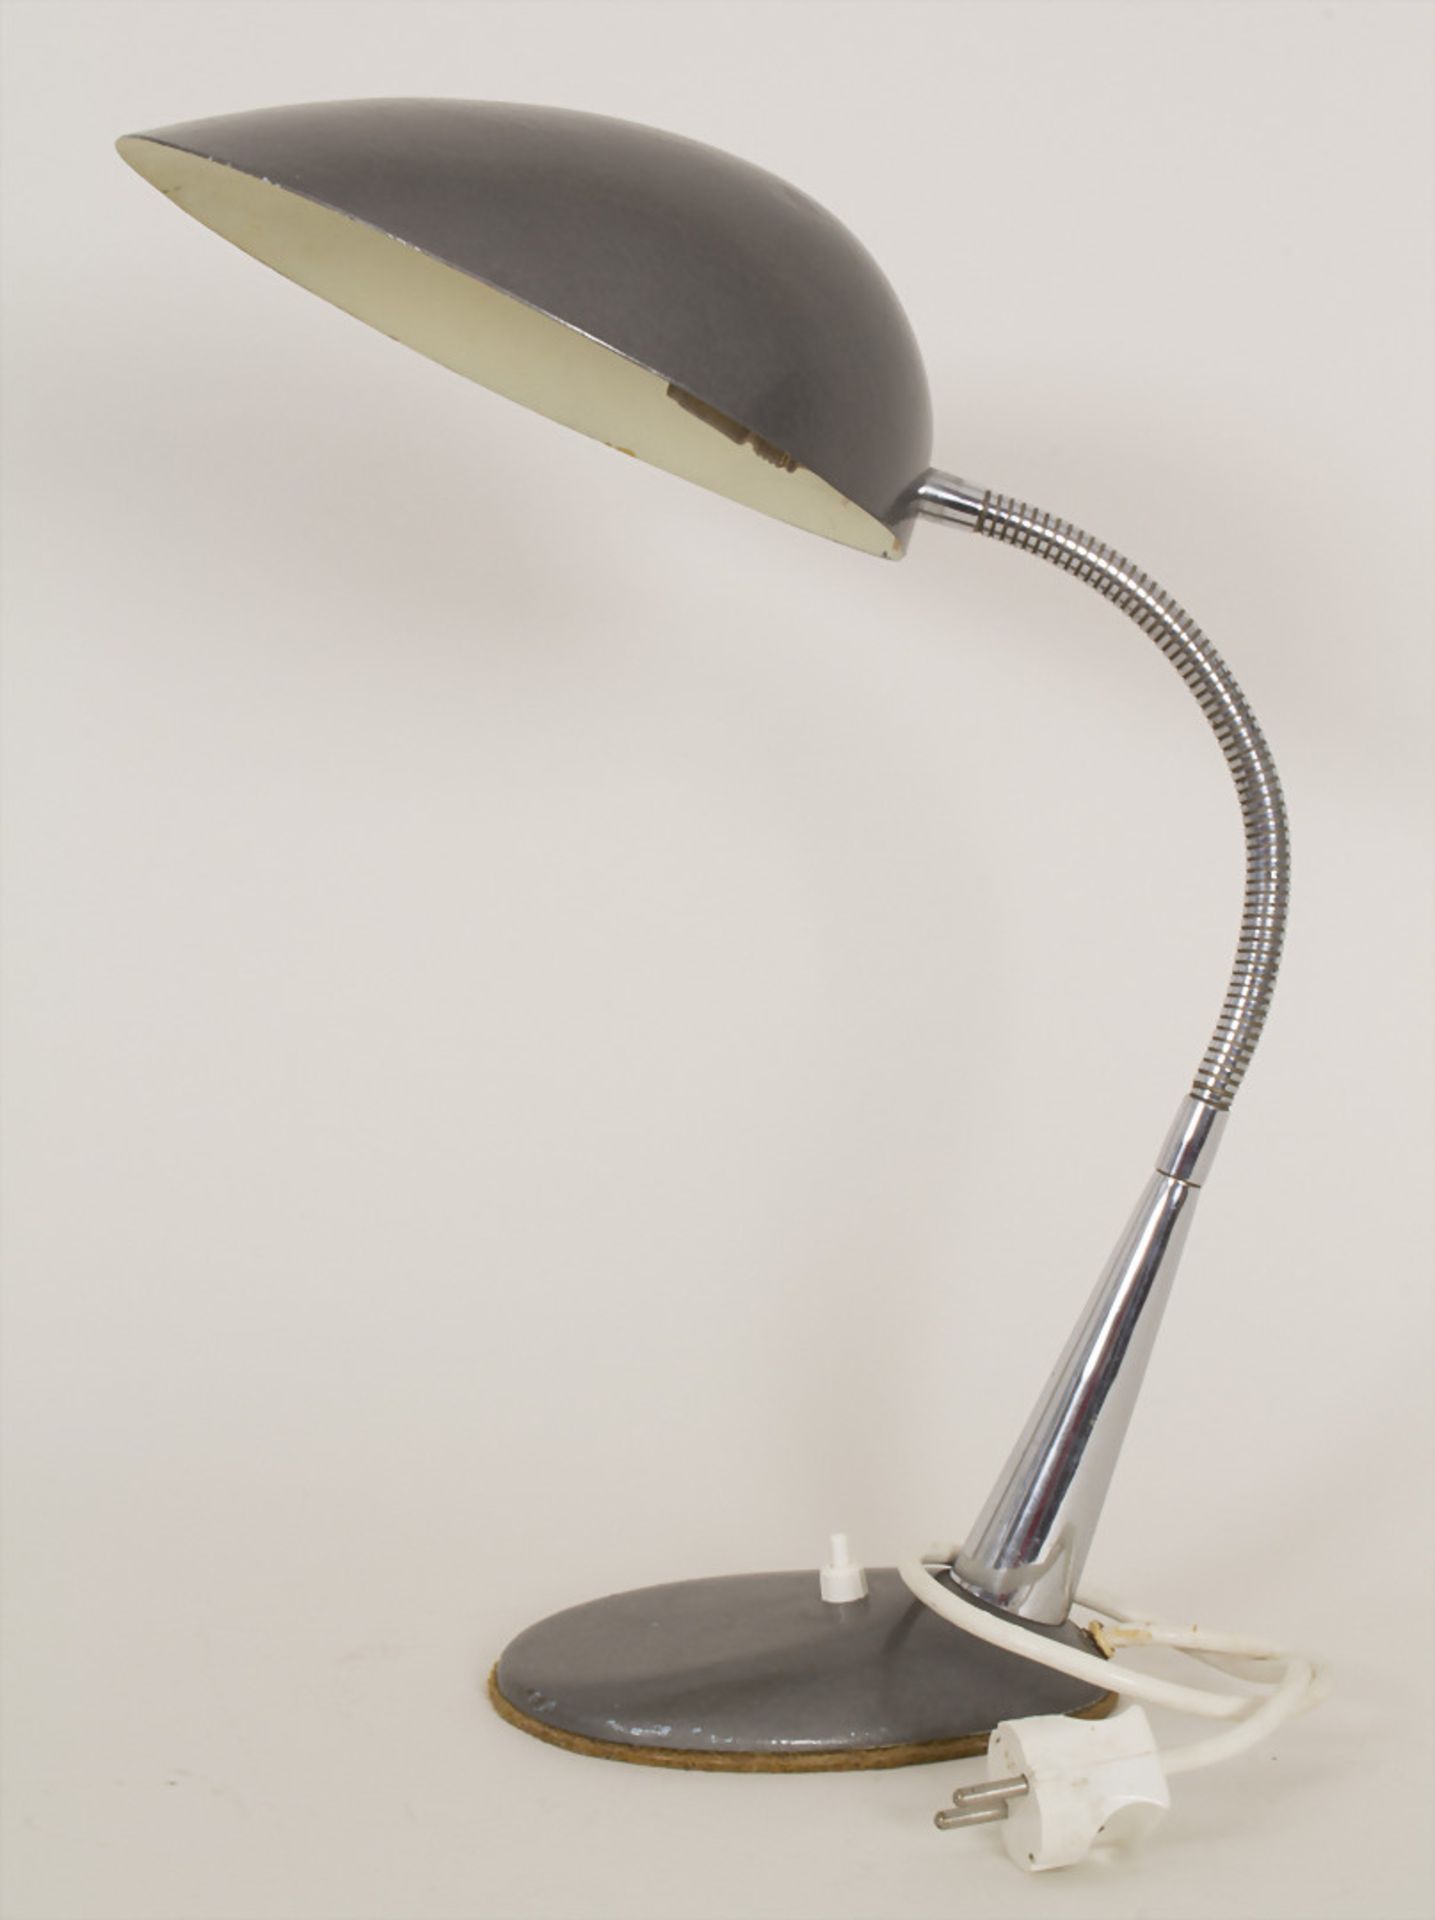 Schreibtischlampe / A desk lamp, um 1950Material: Schirm in Aluminium mit dunkelgrauem - Bild 3 aus 5